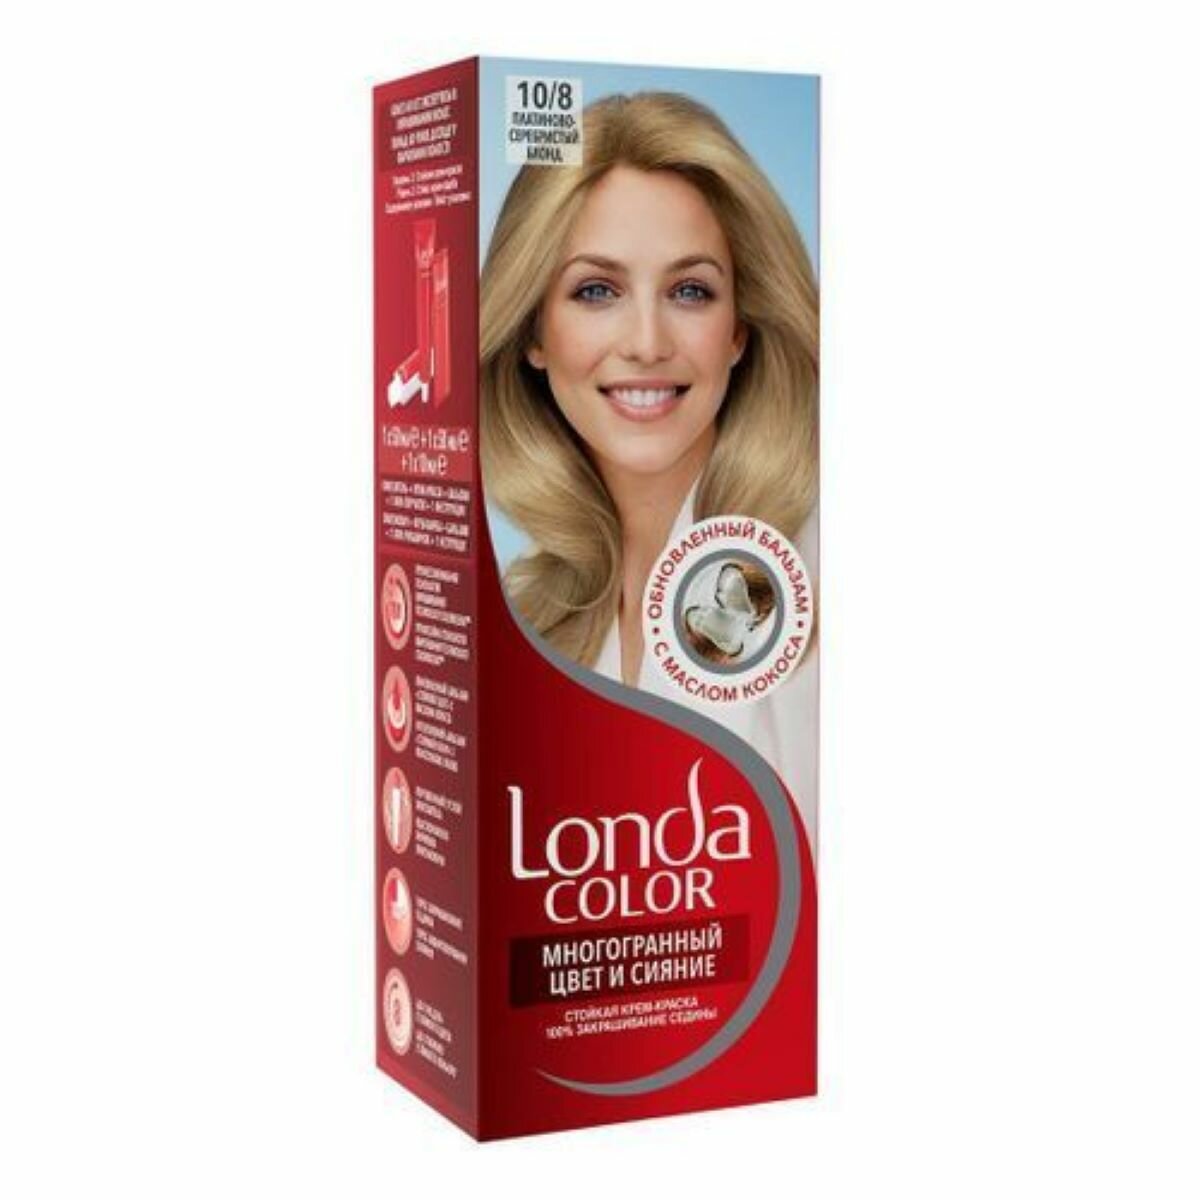 Londa Color Крем-краска стойкая 10/8 Платиново-серебристый